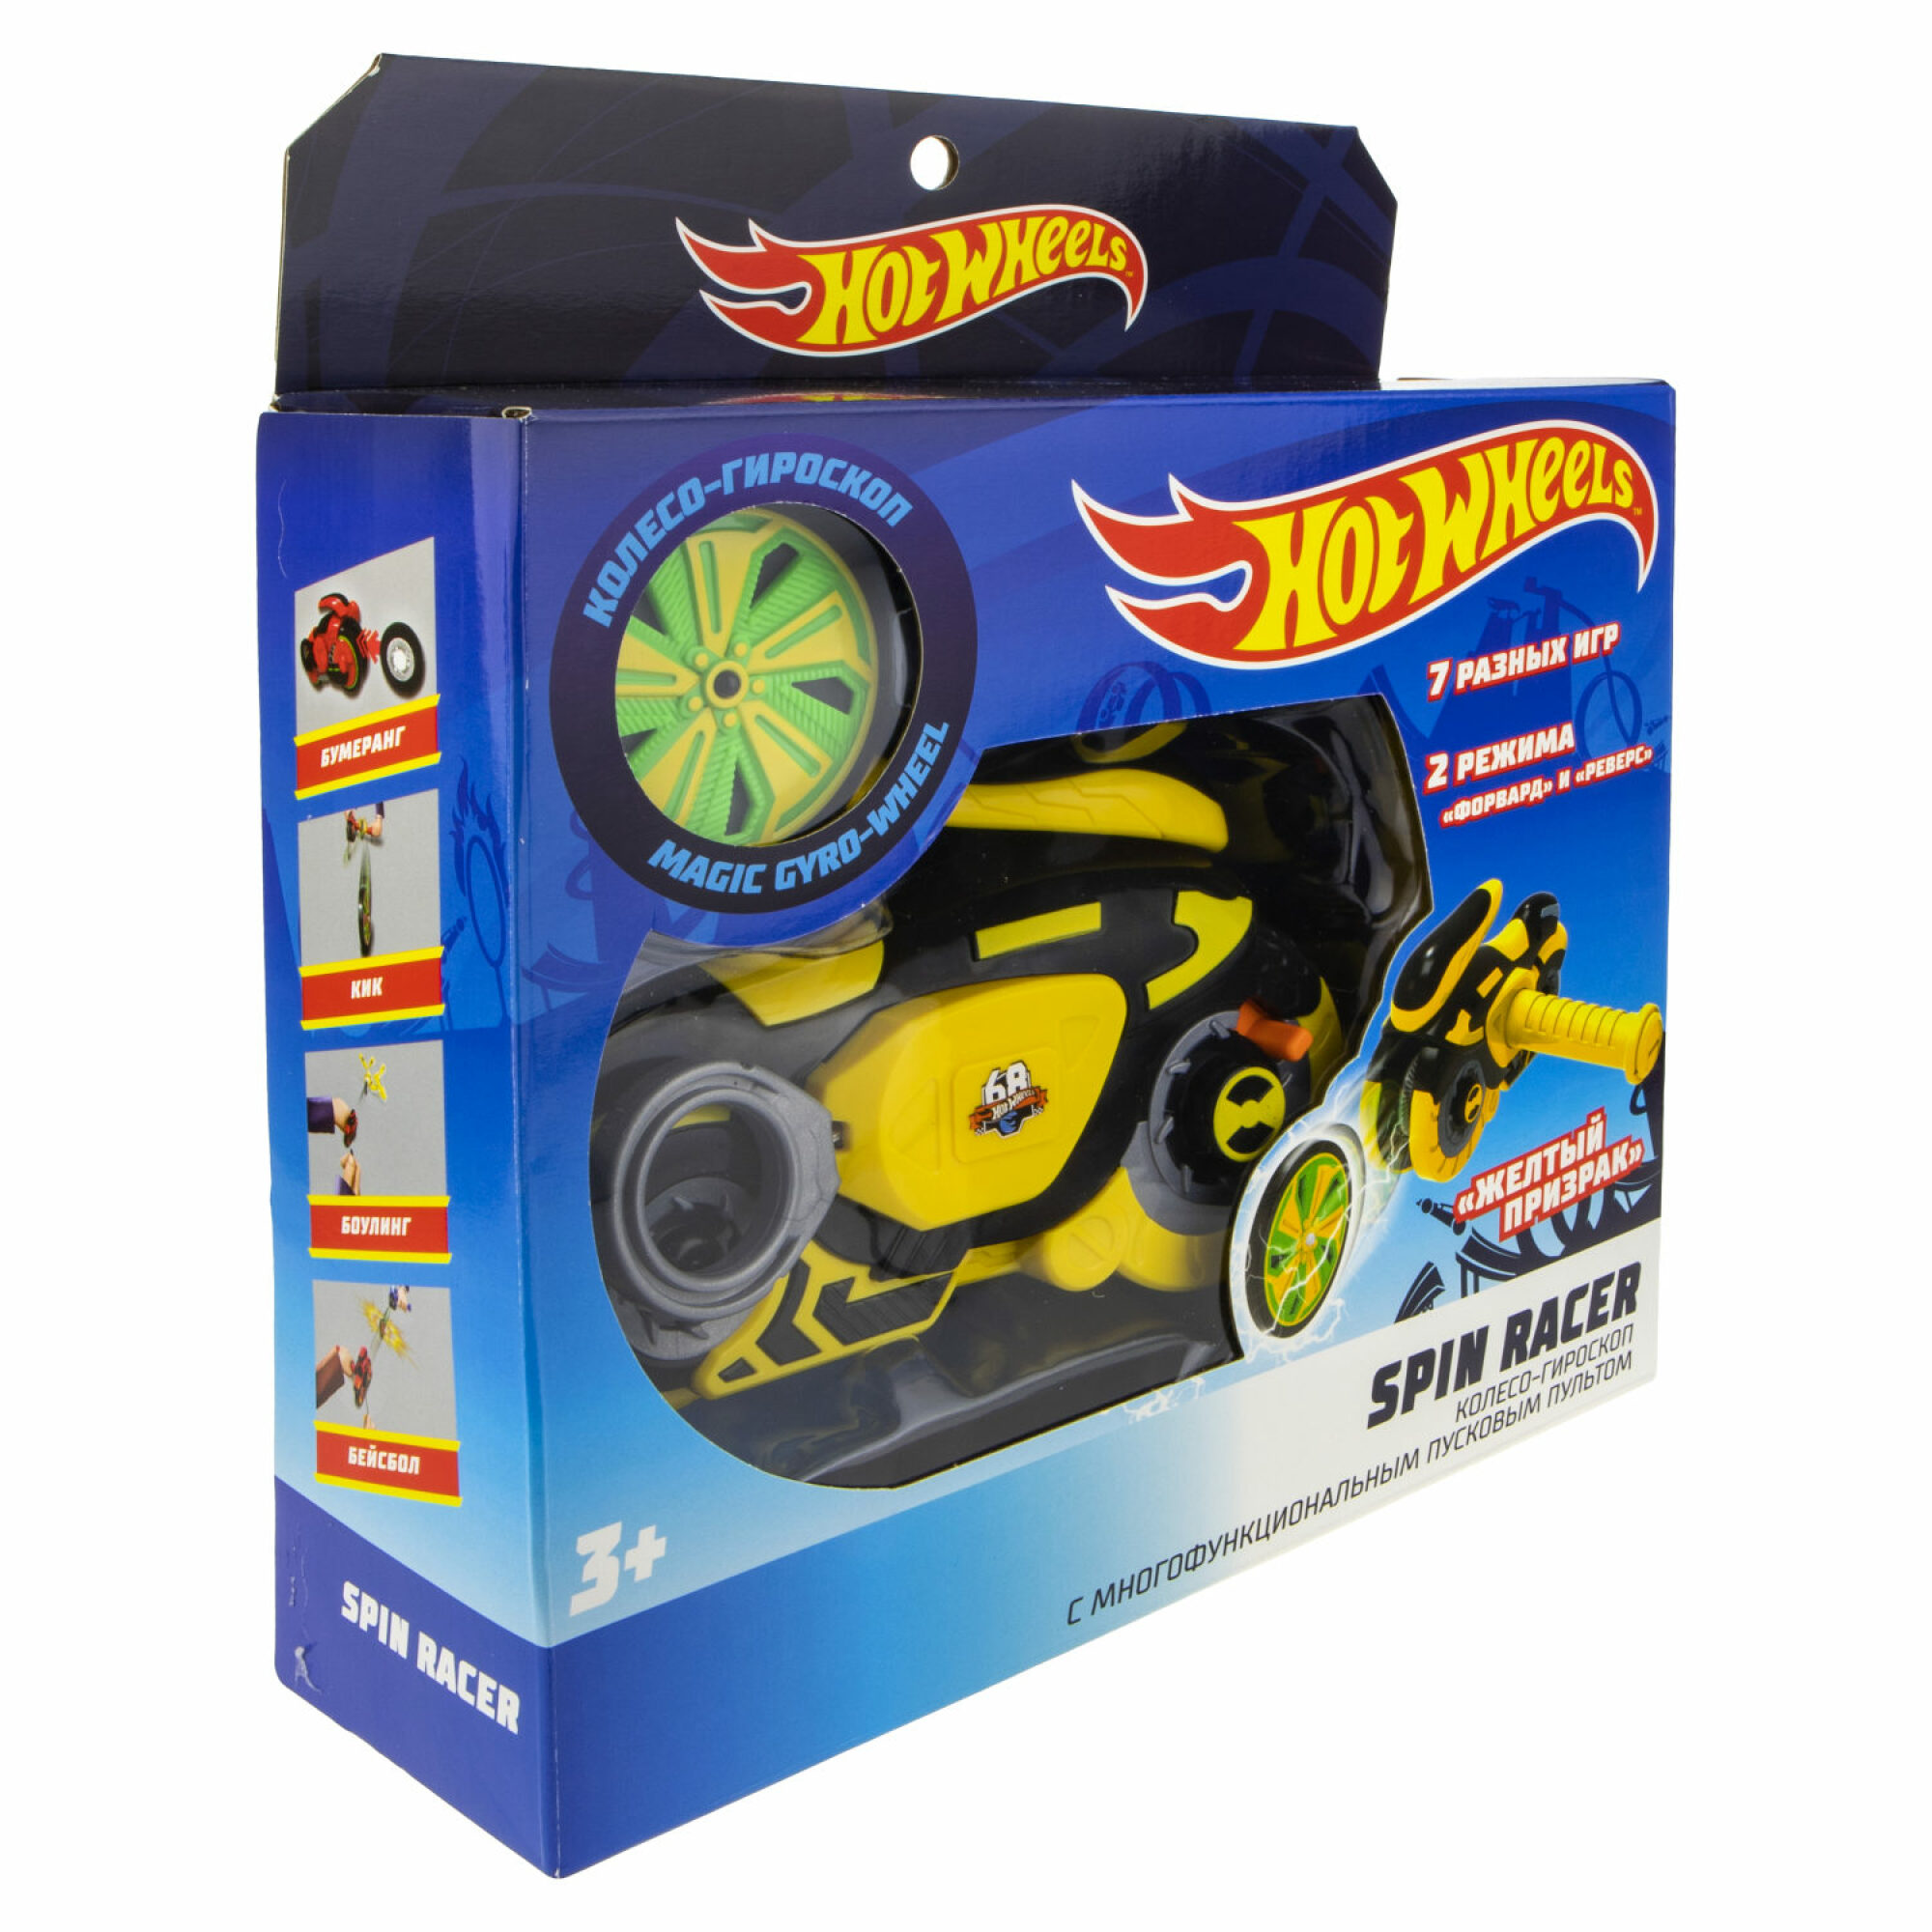 Spin racers. Игрушка hot Wheels т19371 Spin Racer "желтый призрак". Хот Вилс спин рейсер. Игровой набор hot Wheels Spin Racer желтый призрак с диском 16 см желтый. Колесо-гироскоп hot Wheels.